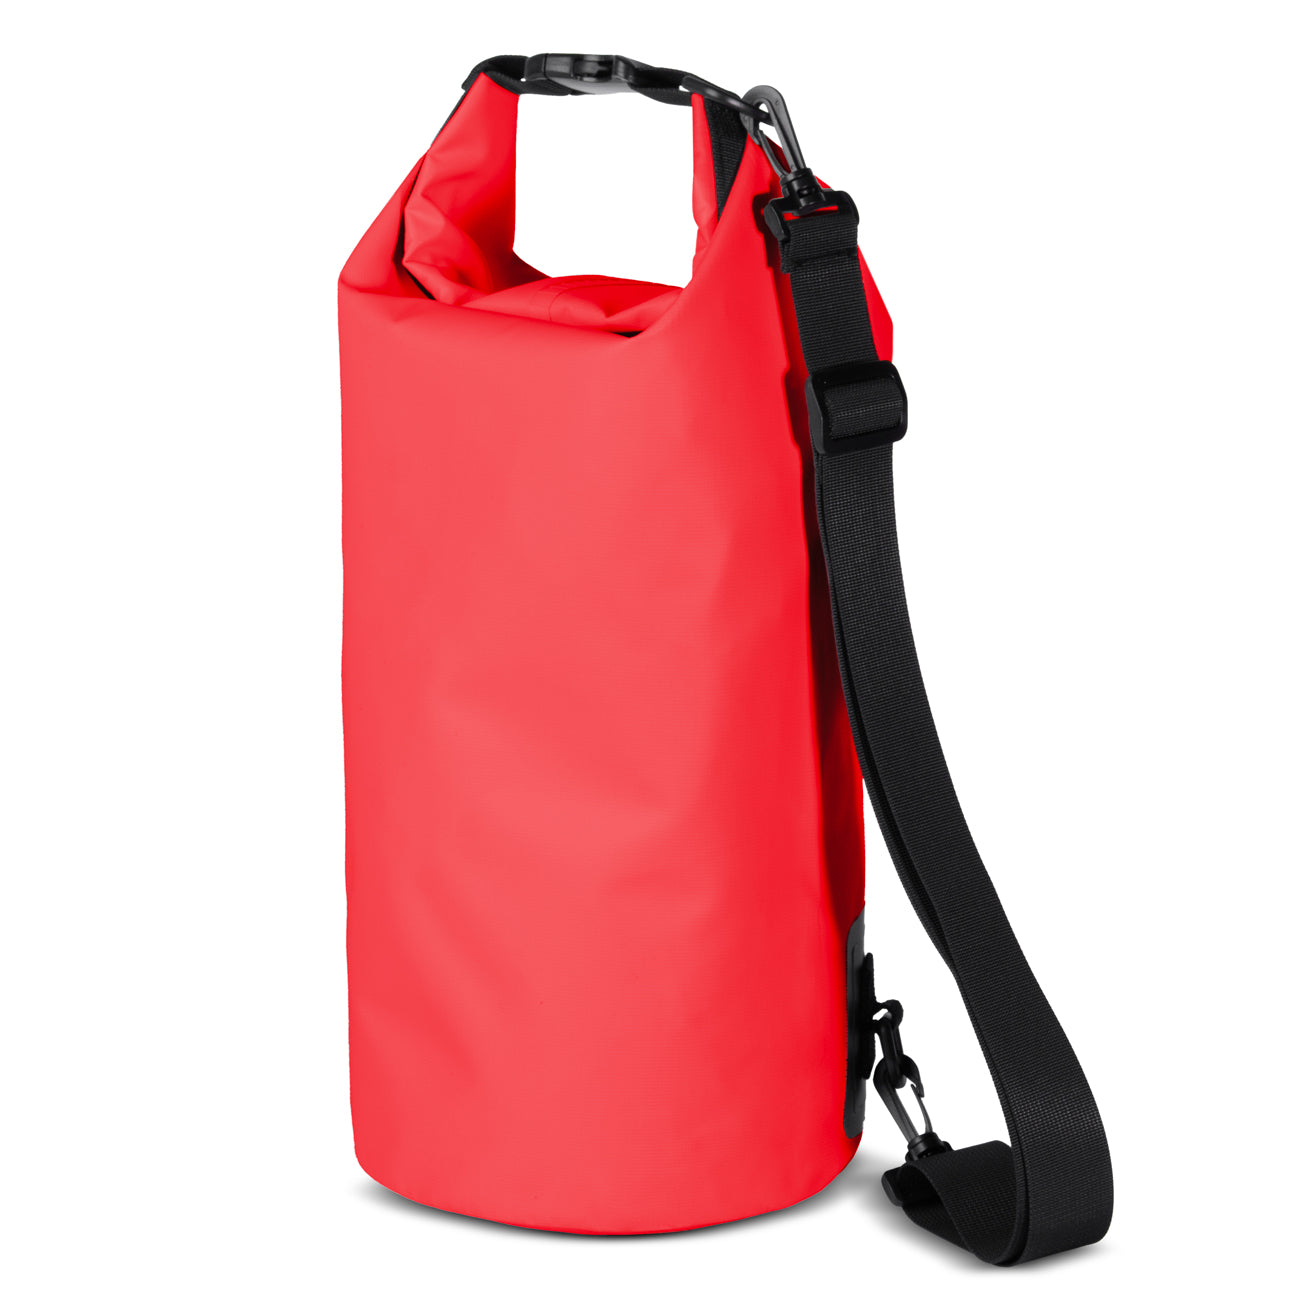 PVC waterproof backpack bag 10l - red